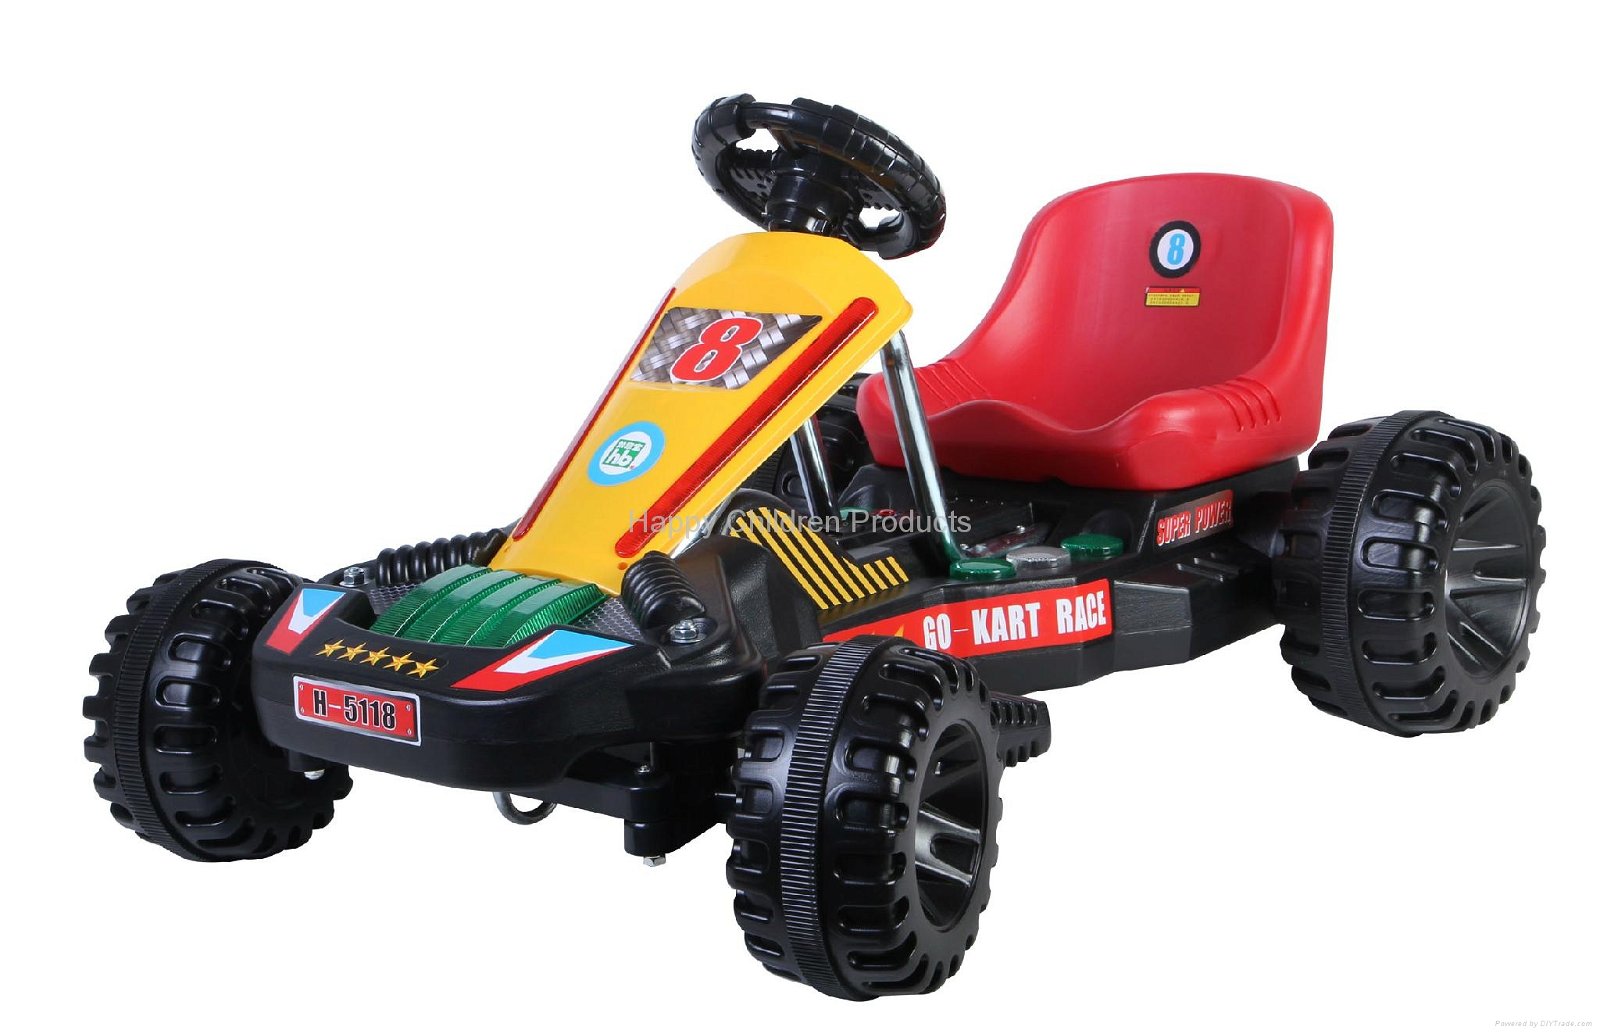 Emulational Kart Racing Car 2